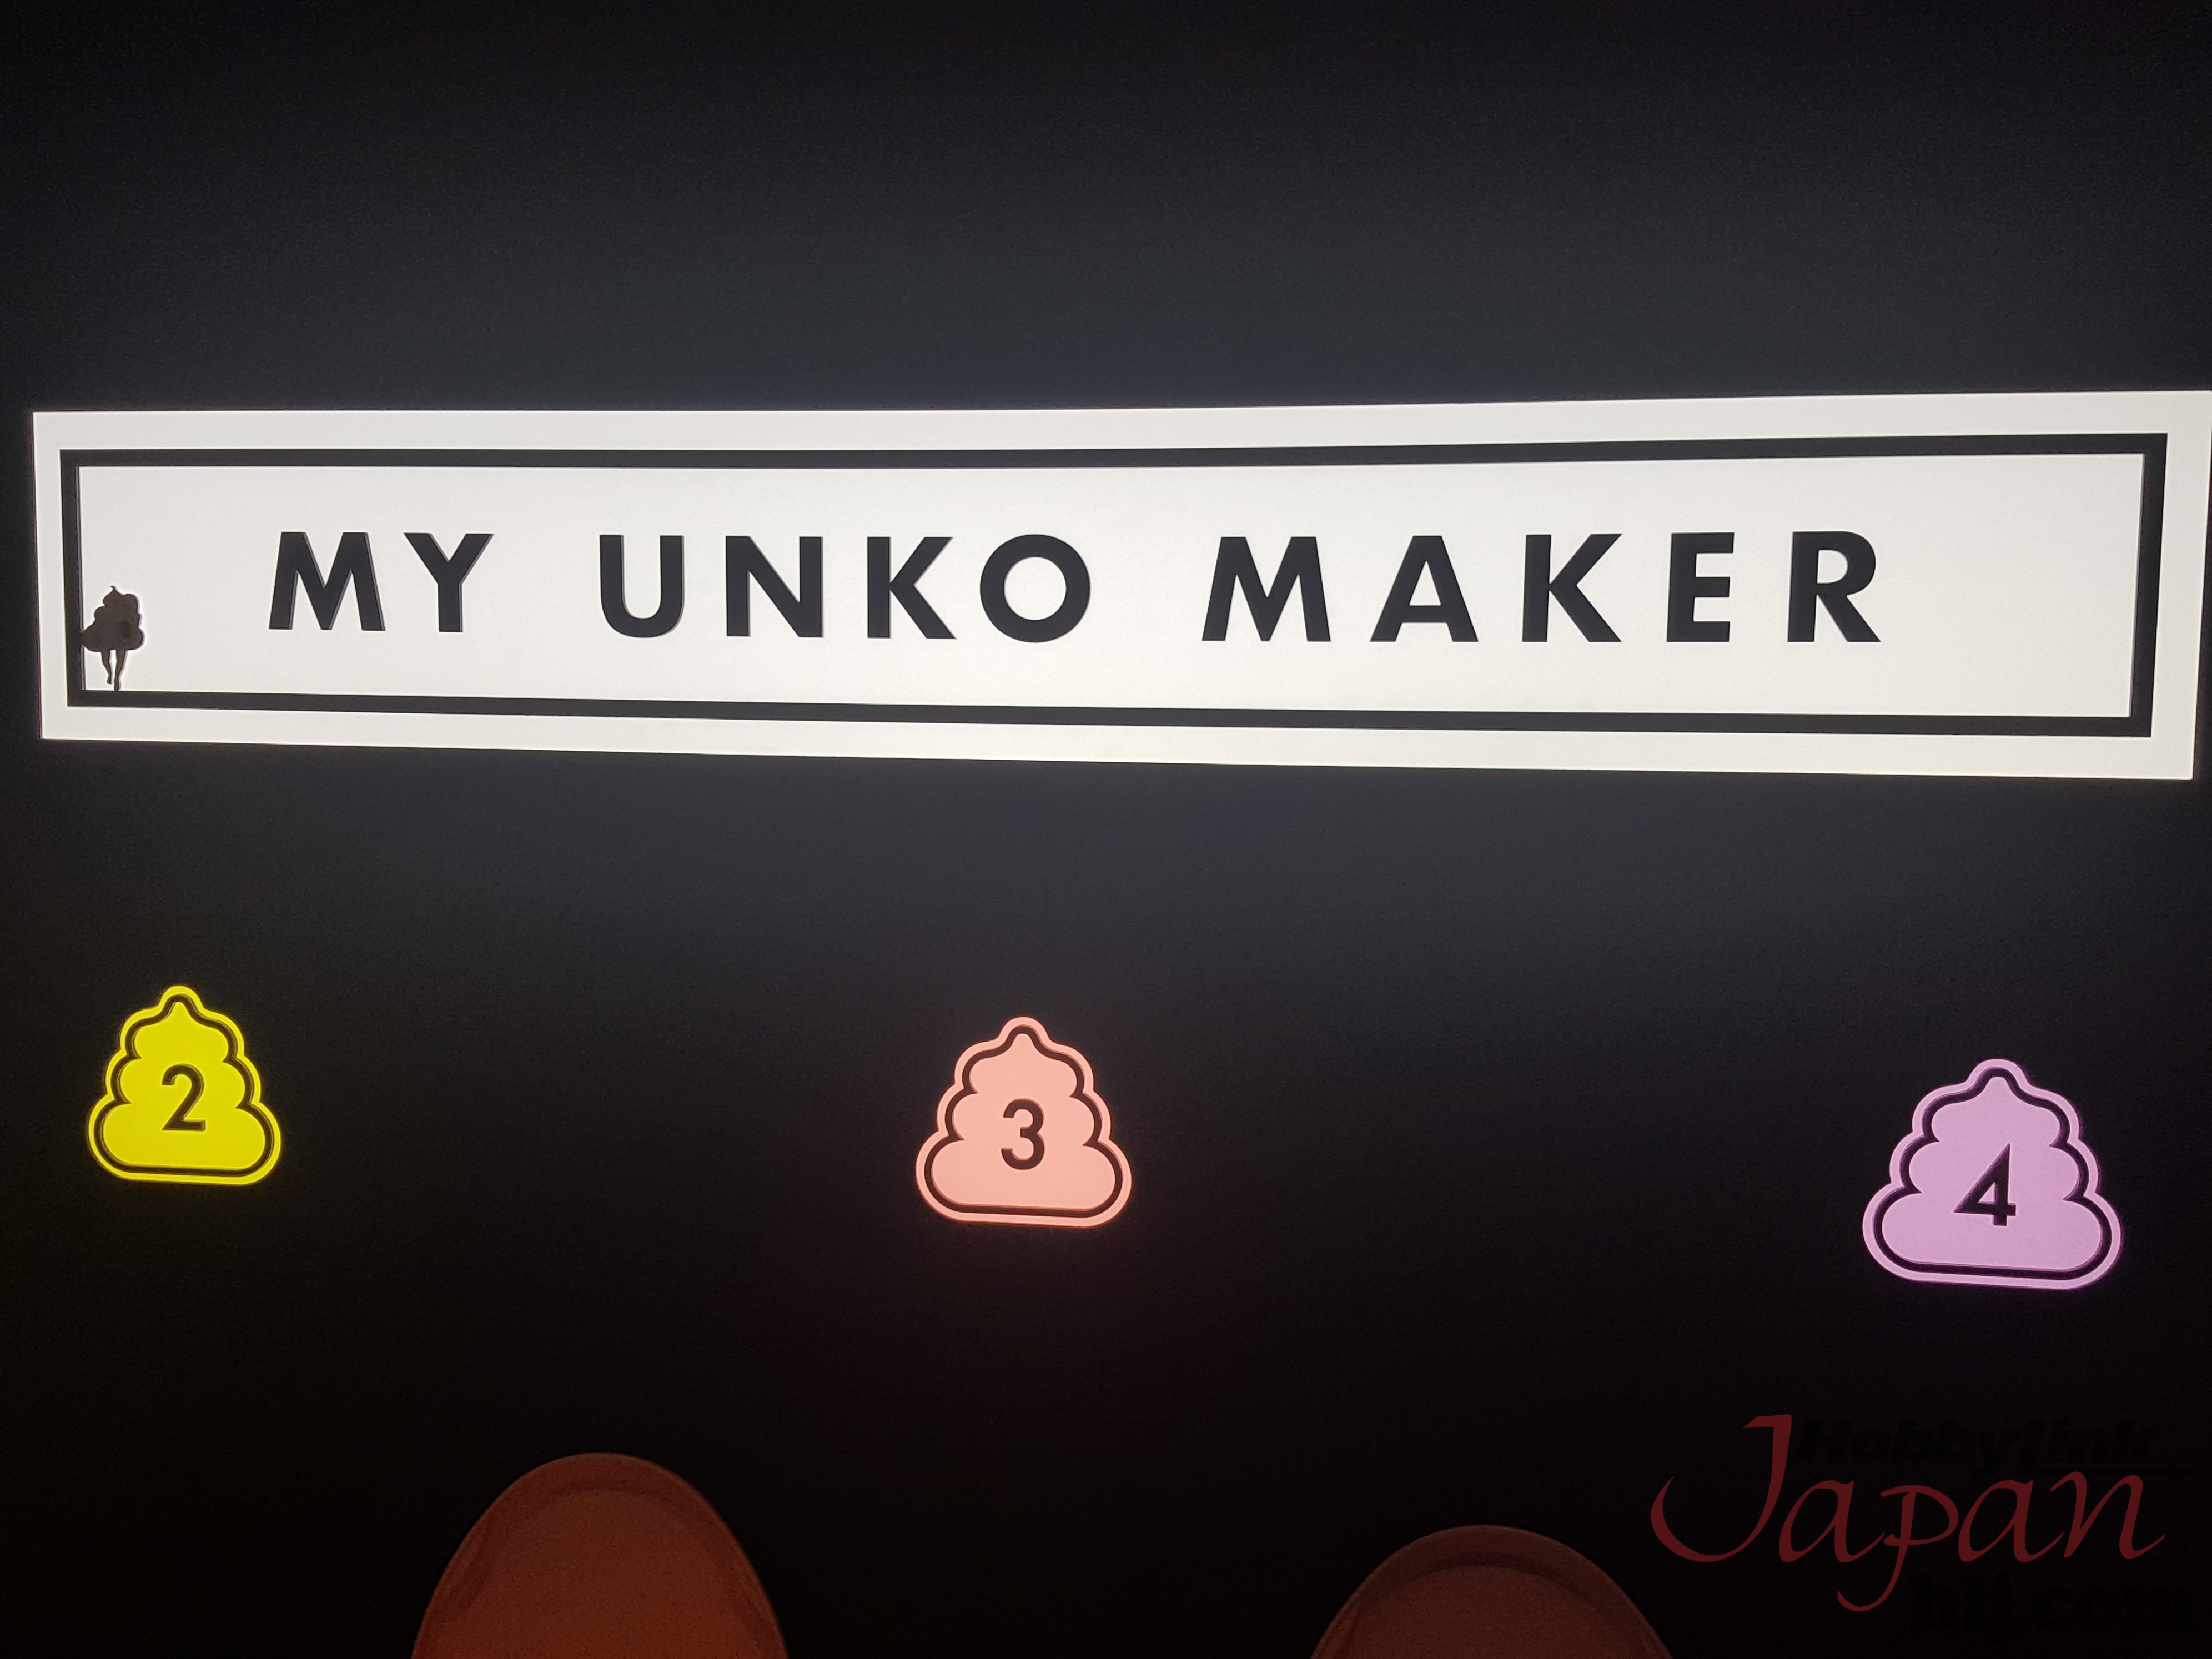 Unko Museum: My Unko Maker